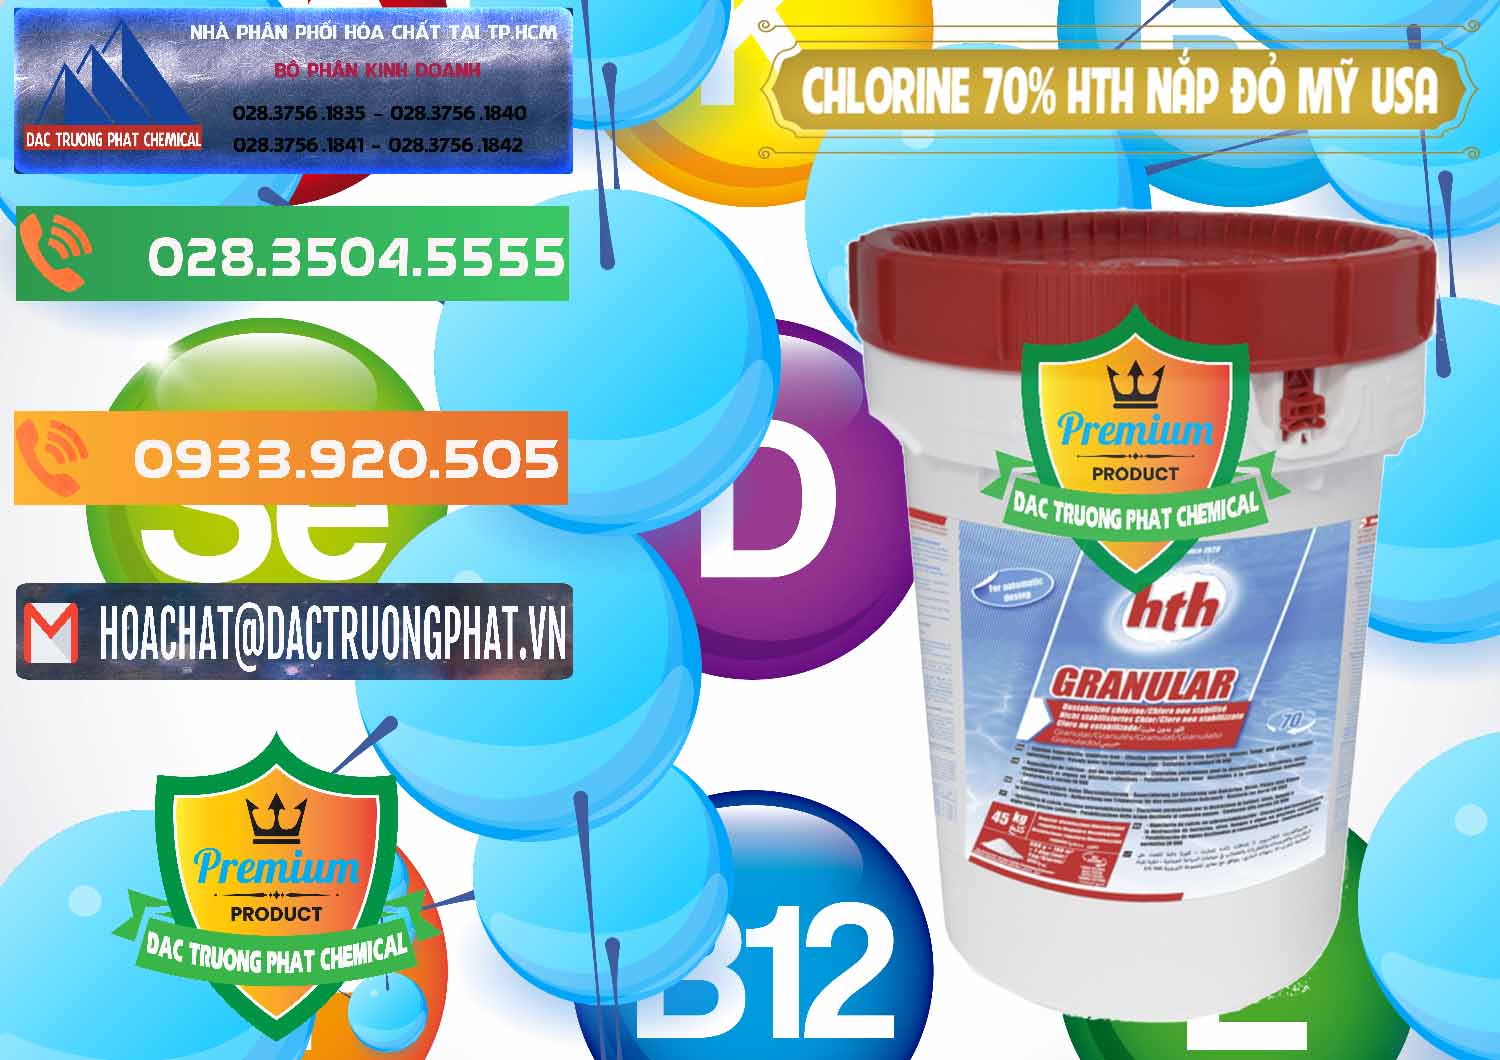 Bán - cung ứng Clorin – Chlorine 70% HTH Nắp Đỏ Mỹ Usa - 0244 - Công ty chuyên bán - cung cấp hóa chất tại TP.HCM - hoachatxulynuoc.com.vn